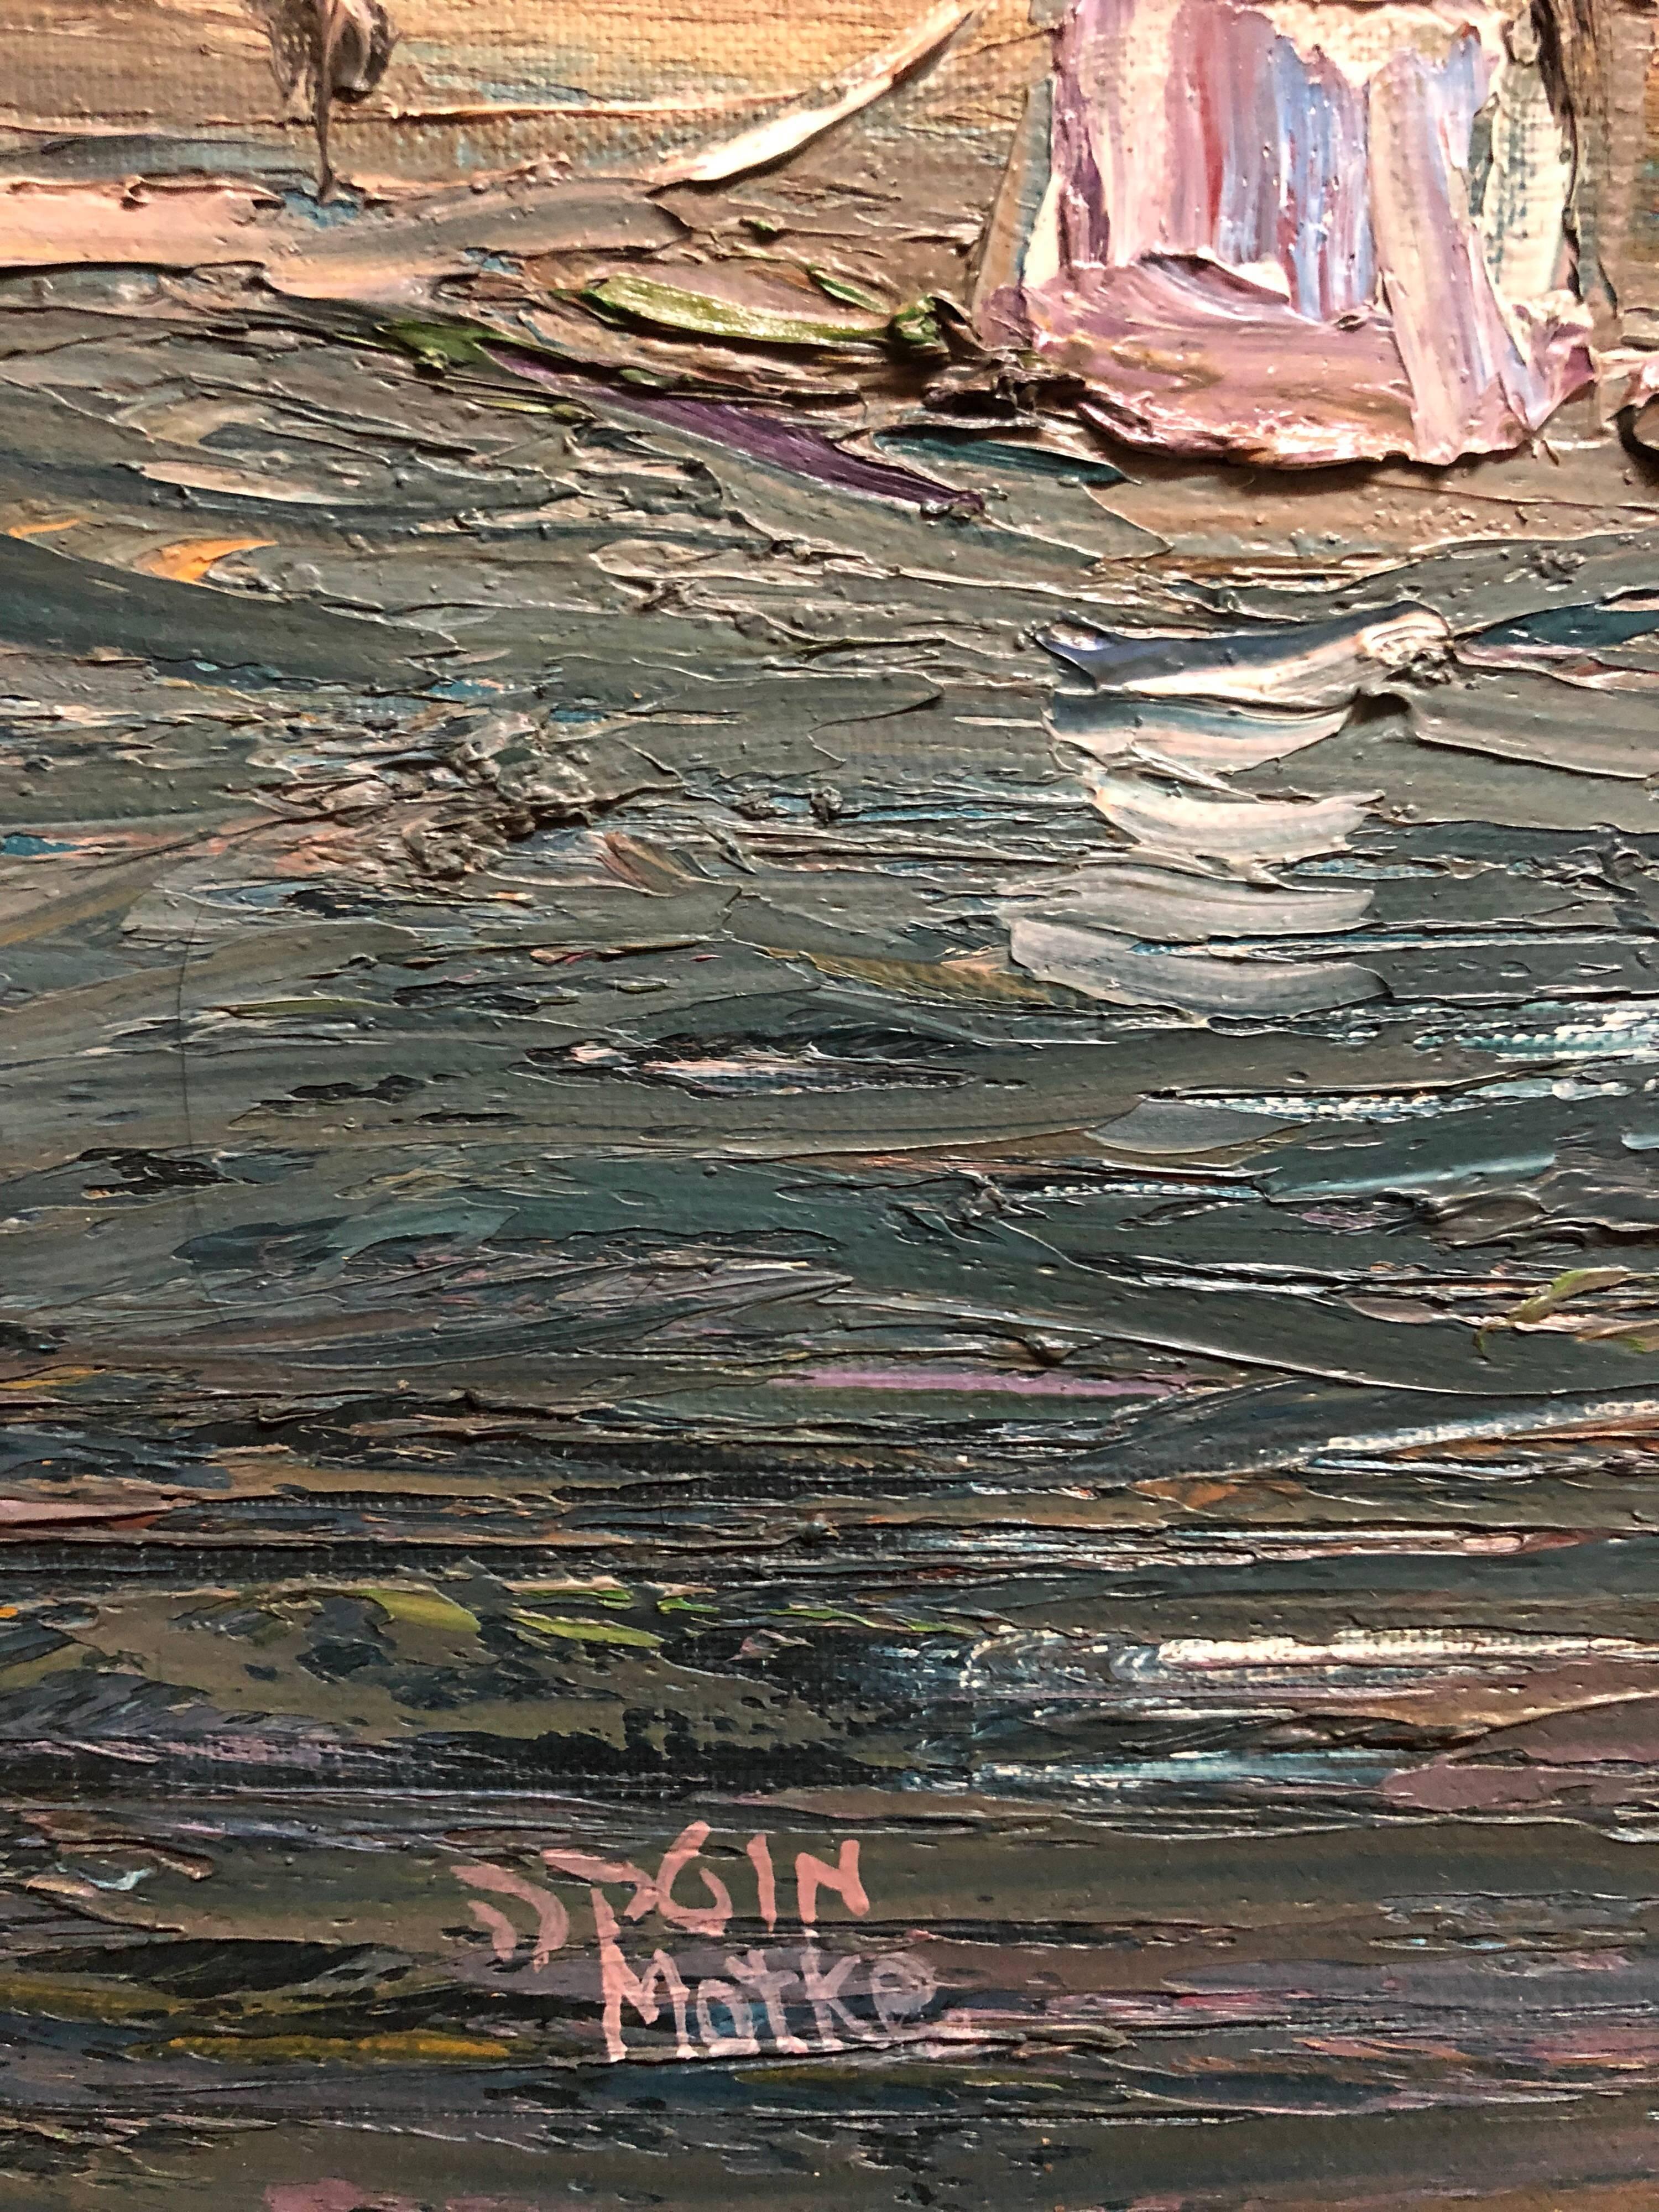 Dans cette œuvre, l'artiste utilise le médium de manière spontanée, en appliquant une couche épaisse de peinture sur la surface. Le travail qui en résulte met l'accent sur l'acte physique de peindre lui-même comme un aspect essentiel de l'œuvre